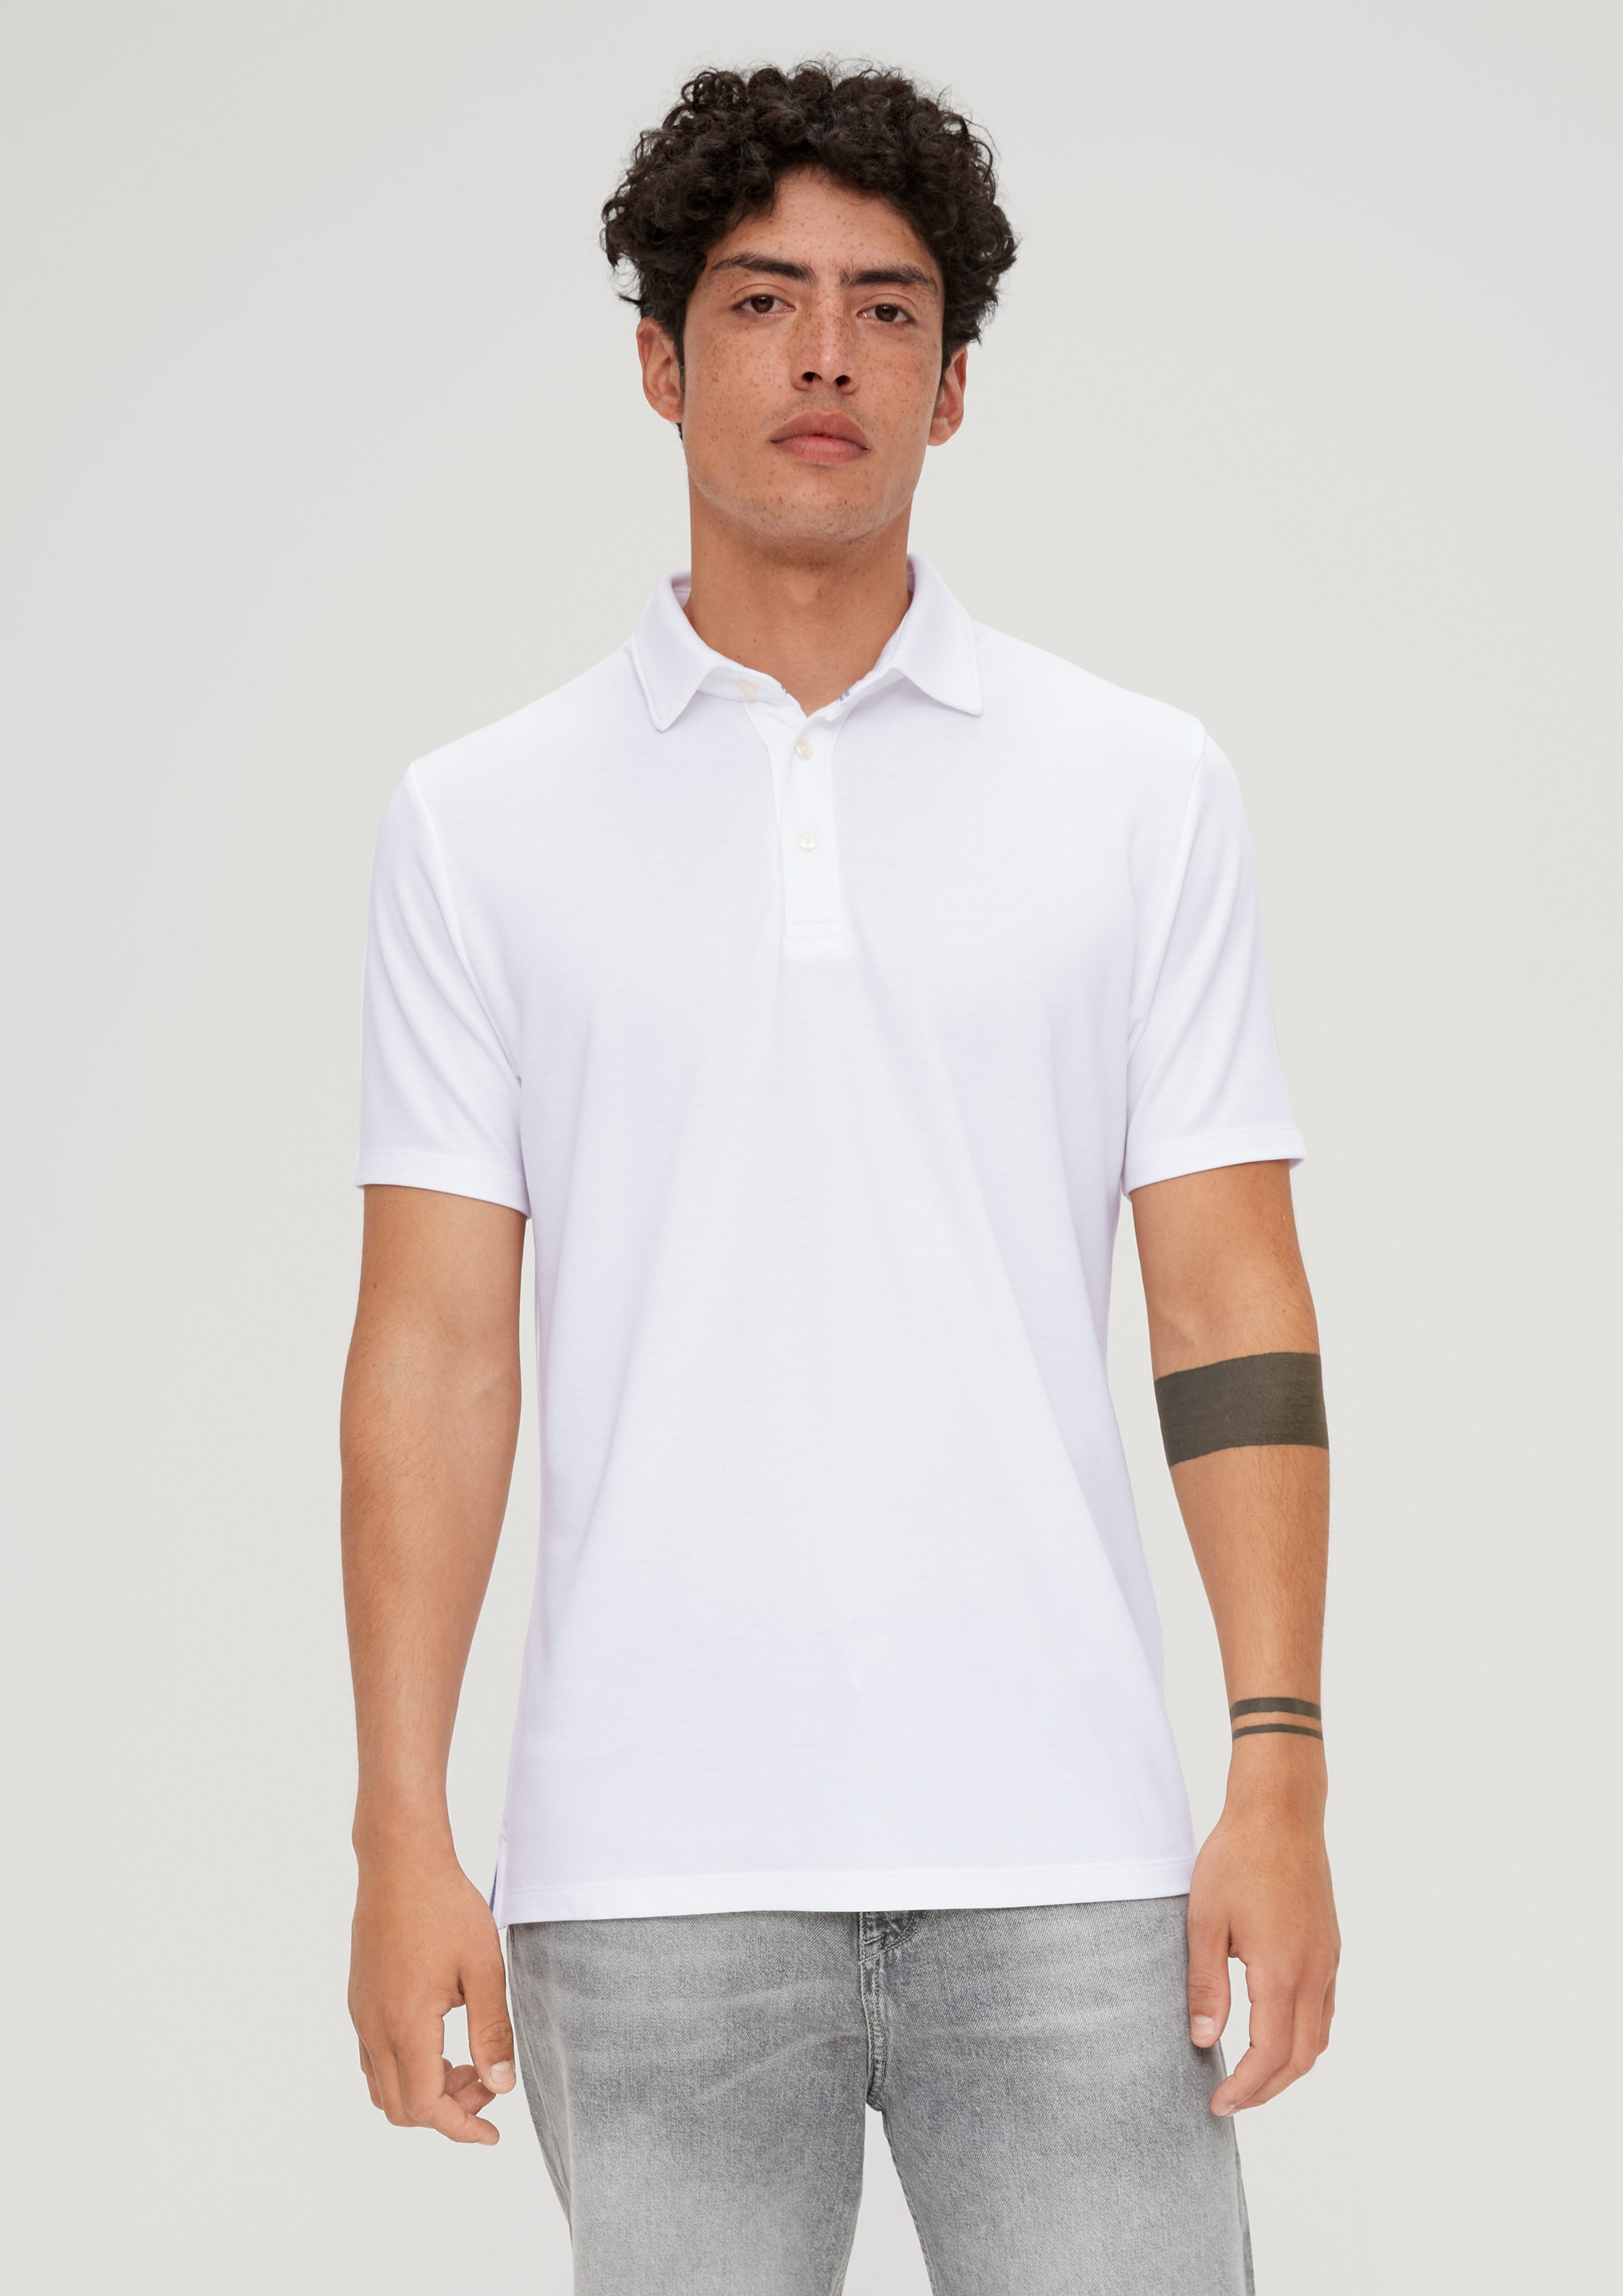 s.Oliver Kurzarmshirt Poloshirt weiß aus Modalmix